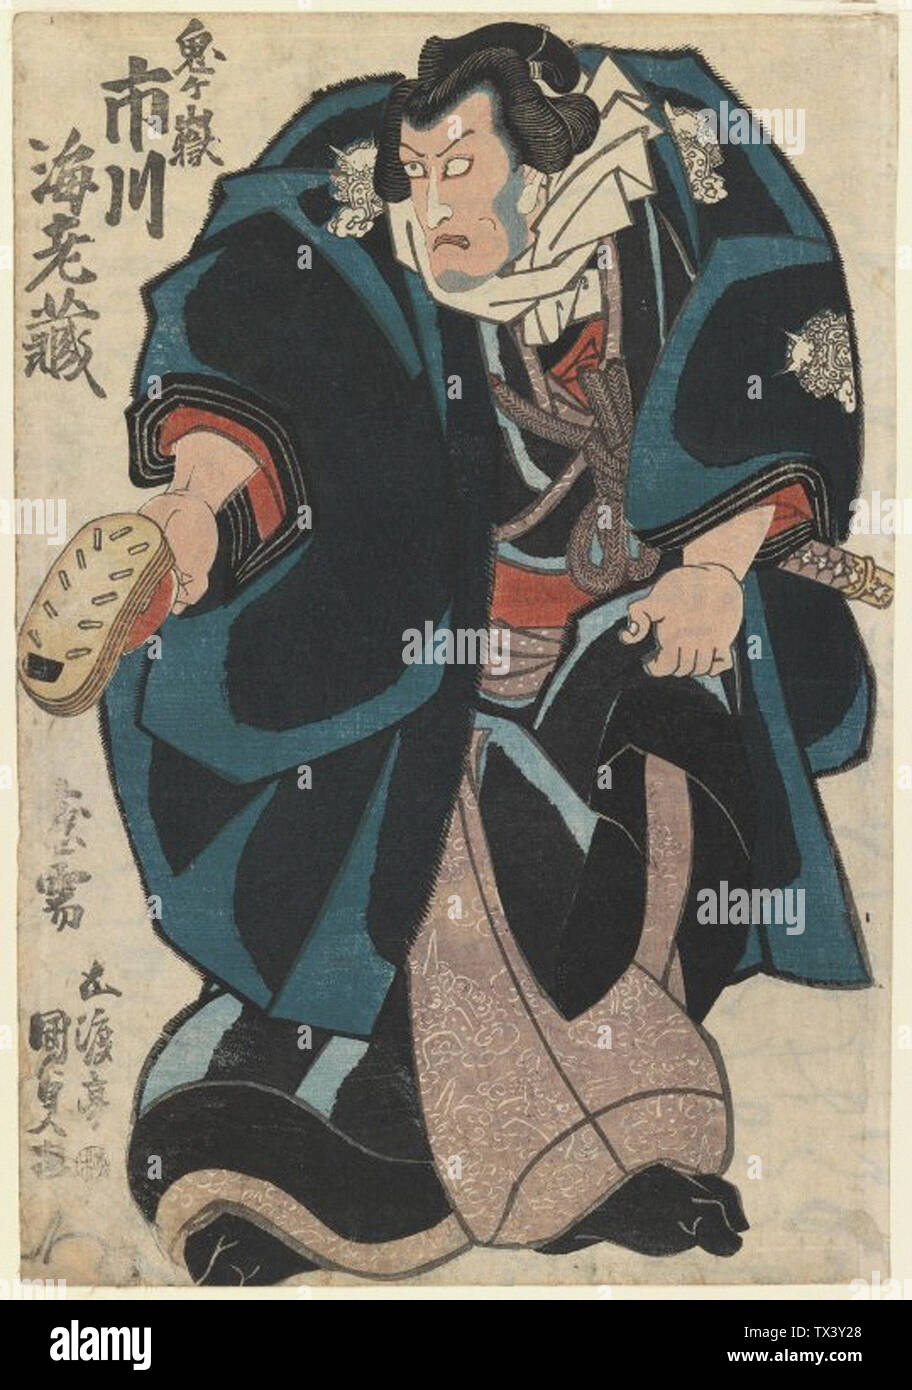 Utagawa Kunisada - Actor Ichikaw Family Stock Photo